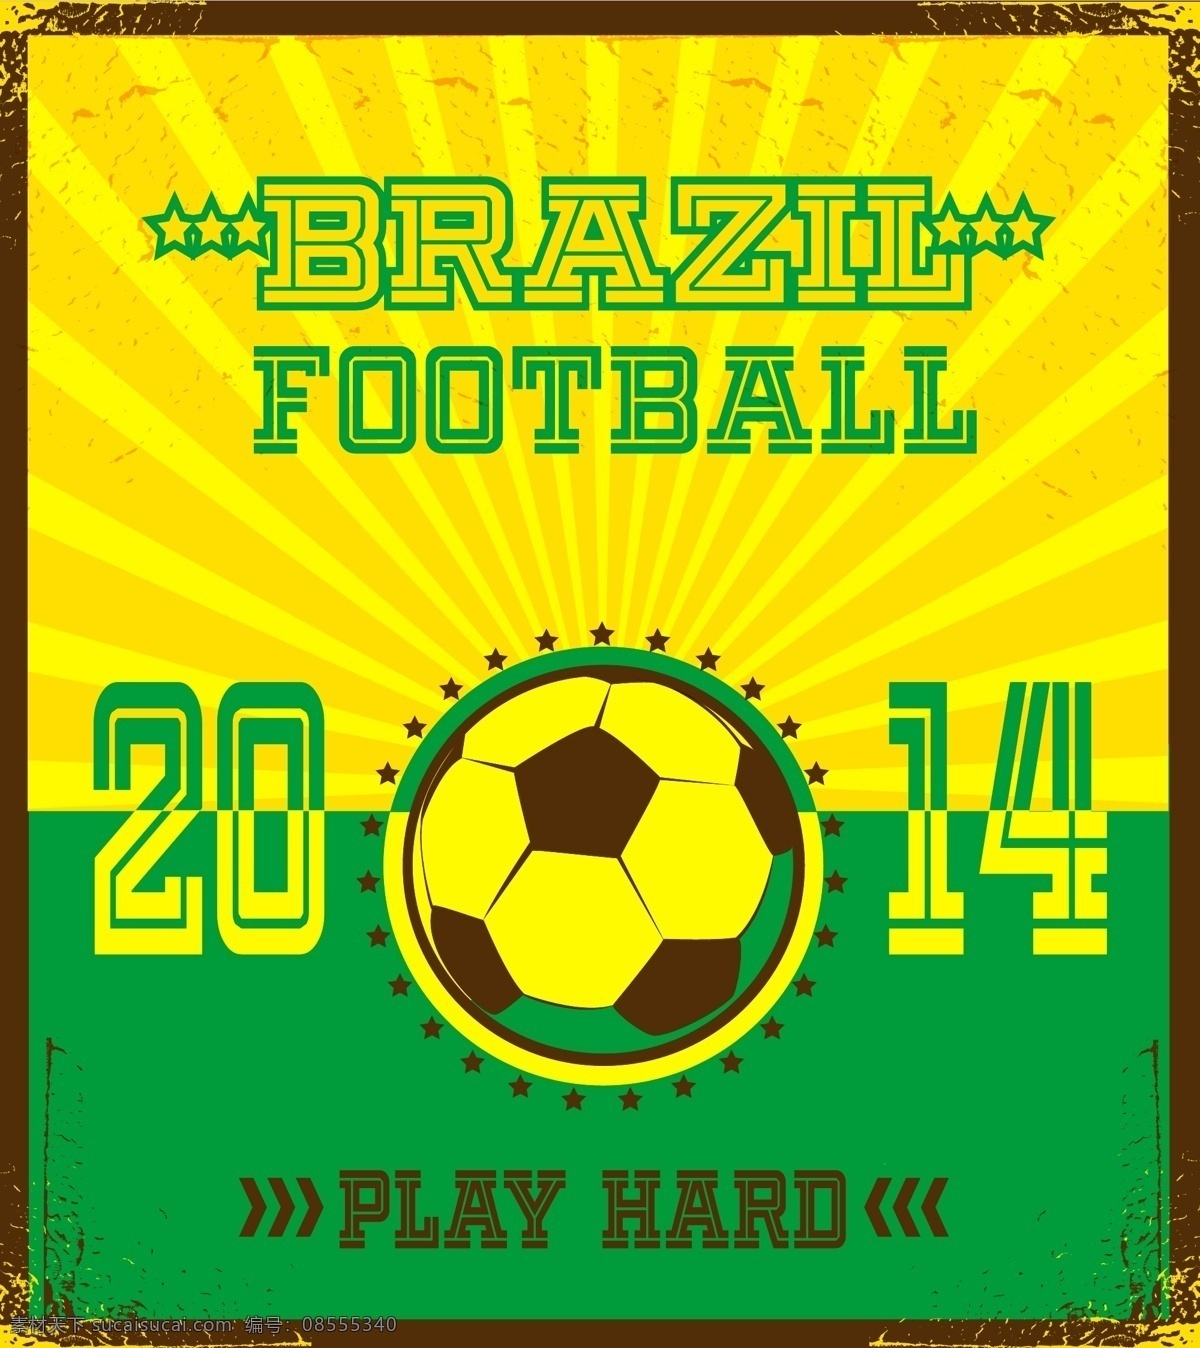 巴西 世界杯 模板下载 足球 足球赛事 足球比赛 世界杯素材 体育运动 生活百科 矢量素材 黄色